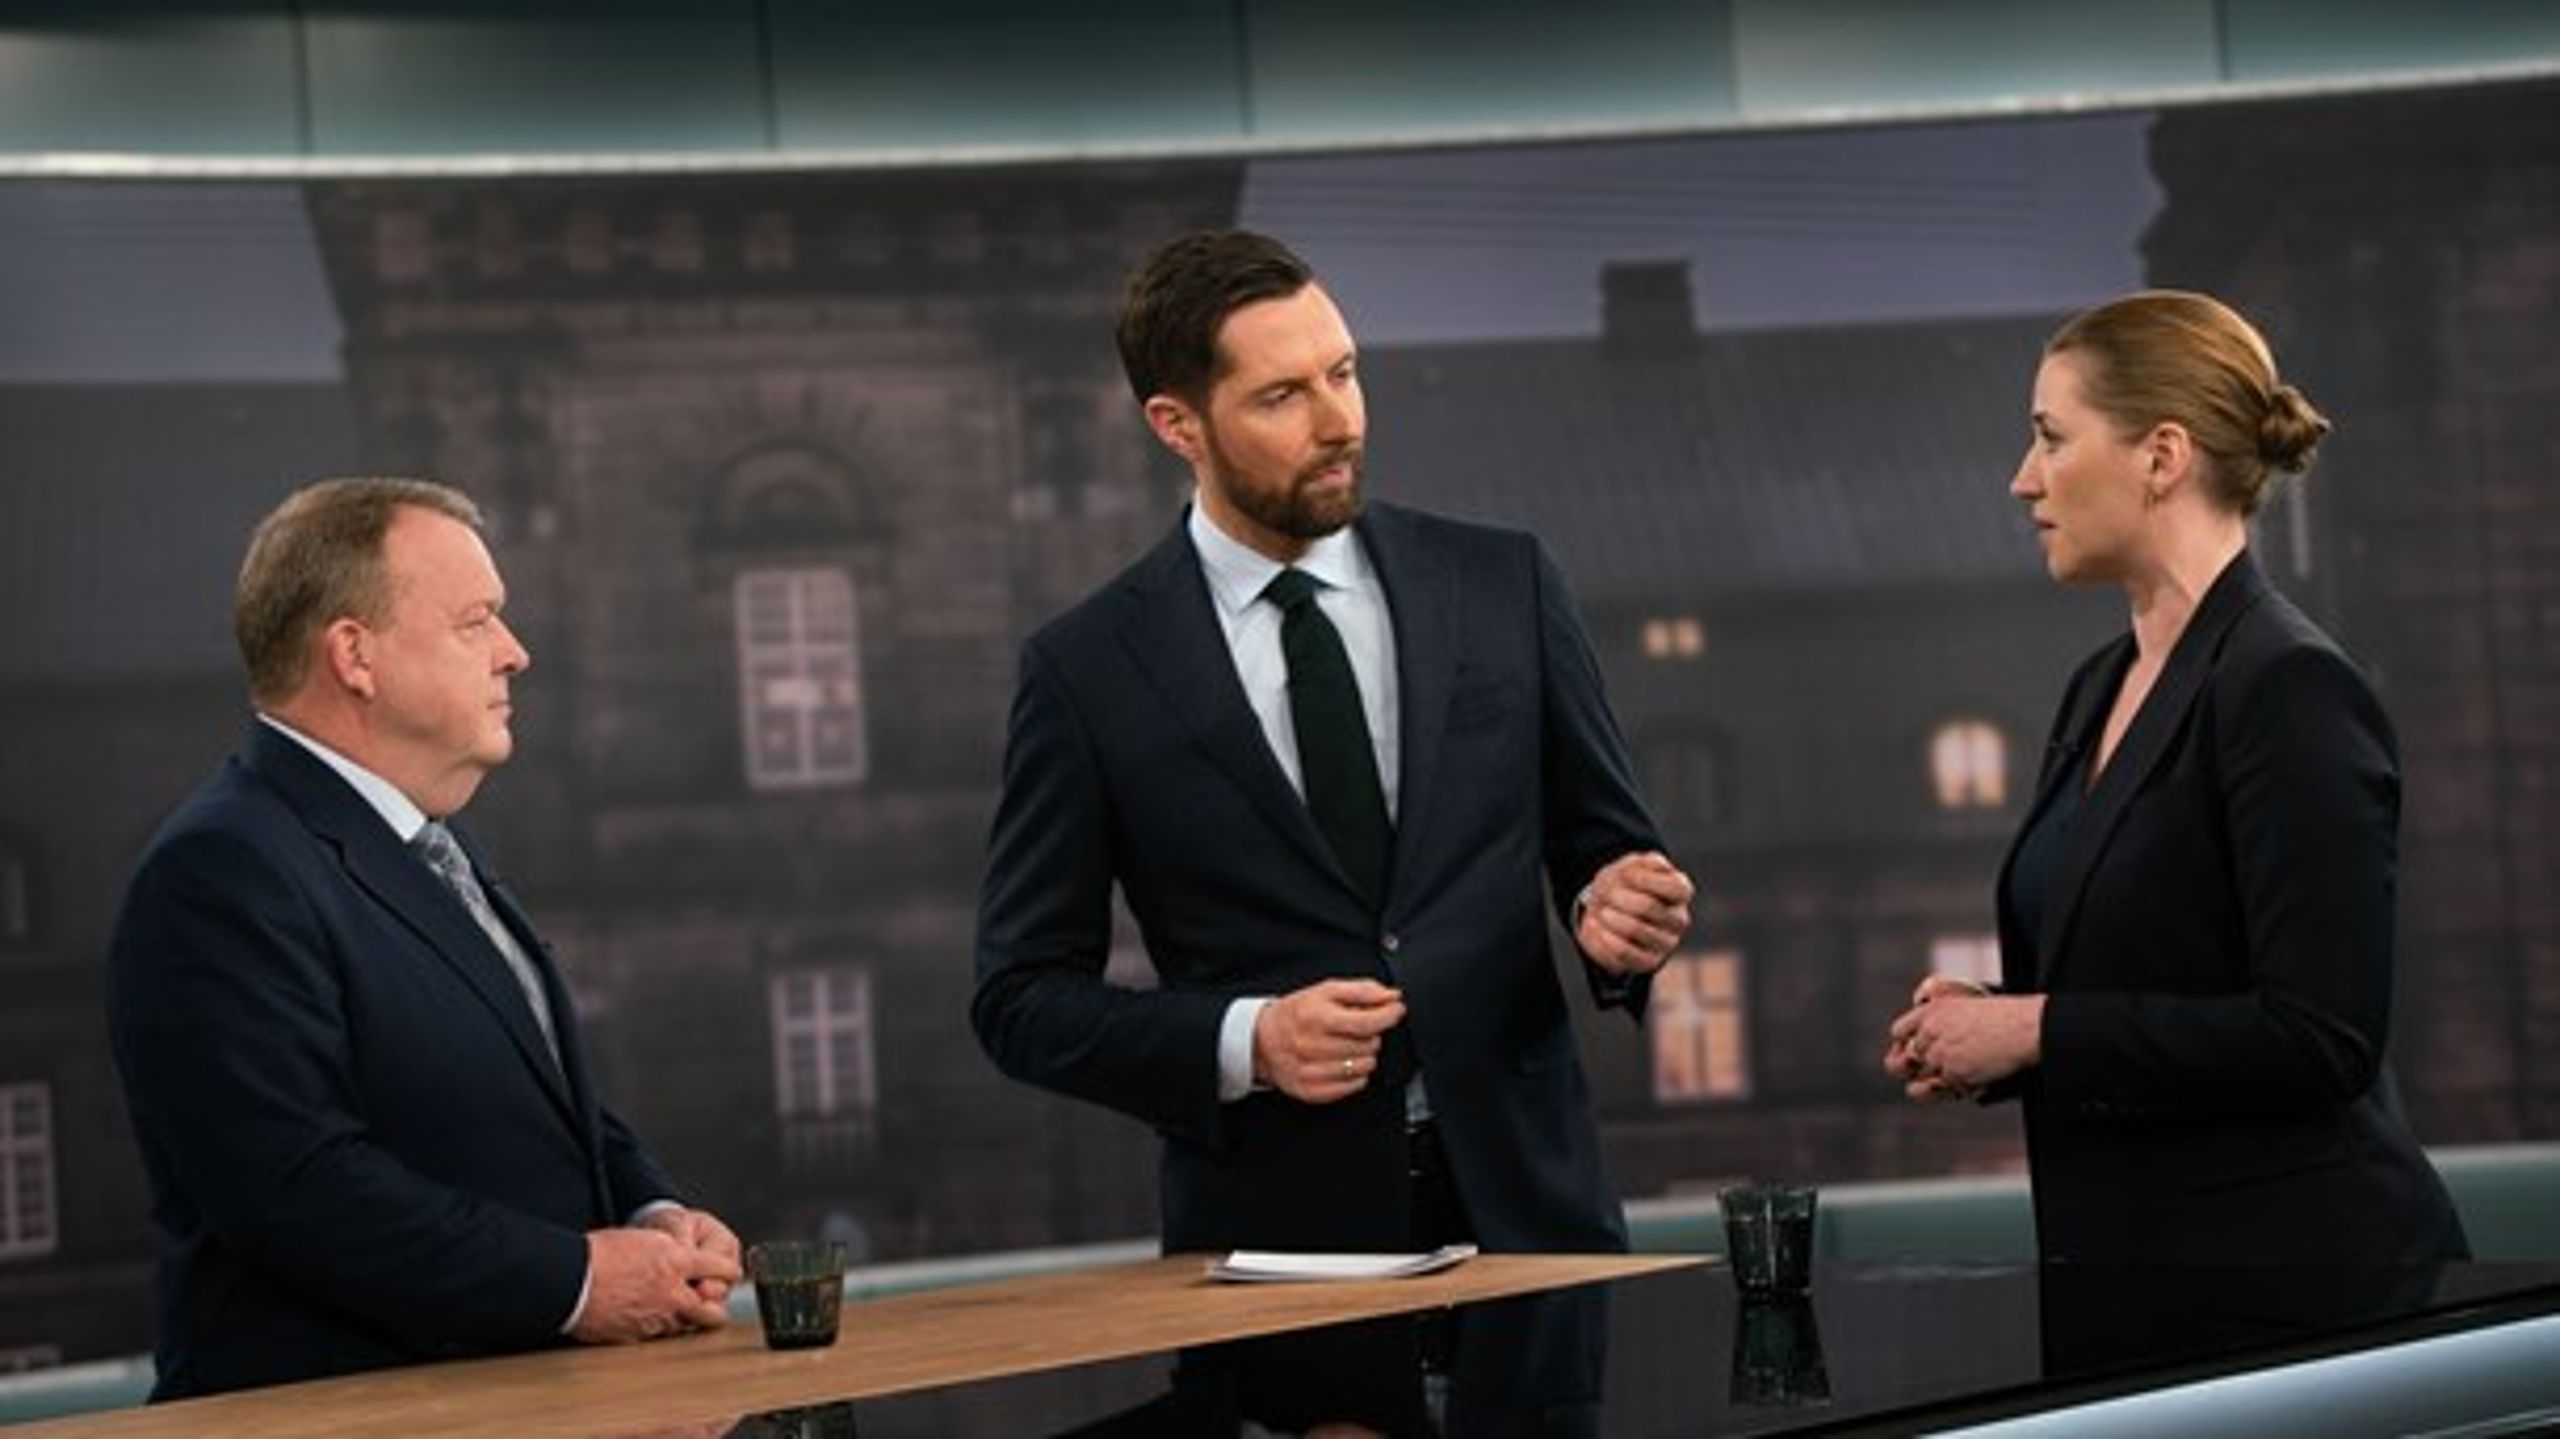 Mette Frederiksen (S) melder afbud til tv-duellen med Lars Løkke Rasmussen i aften på grund af sygdom. Duellen skulle have foregået på TV 2.